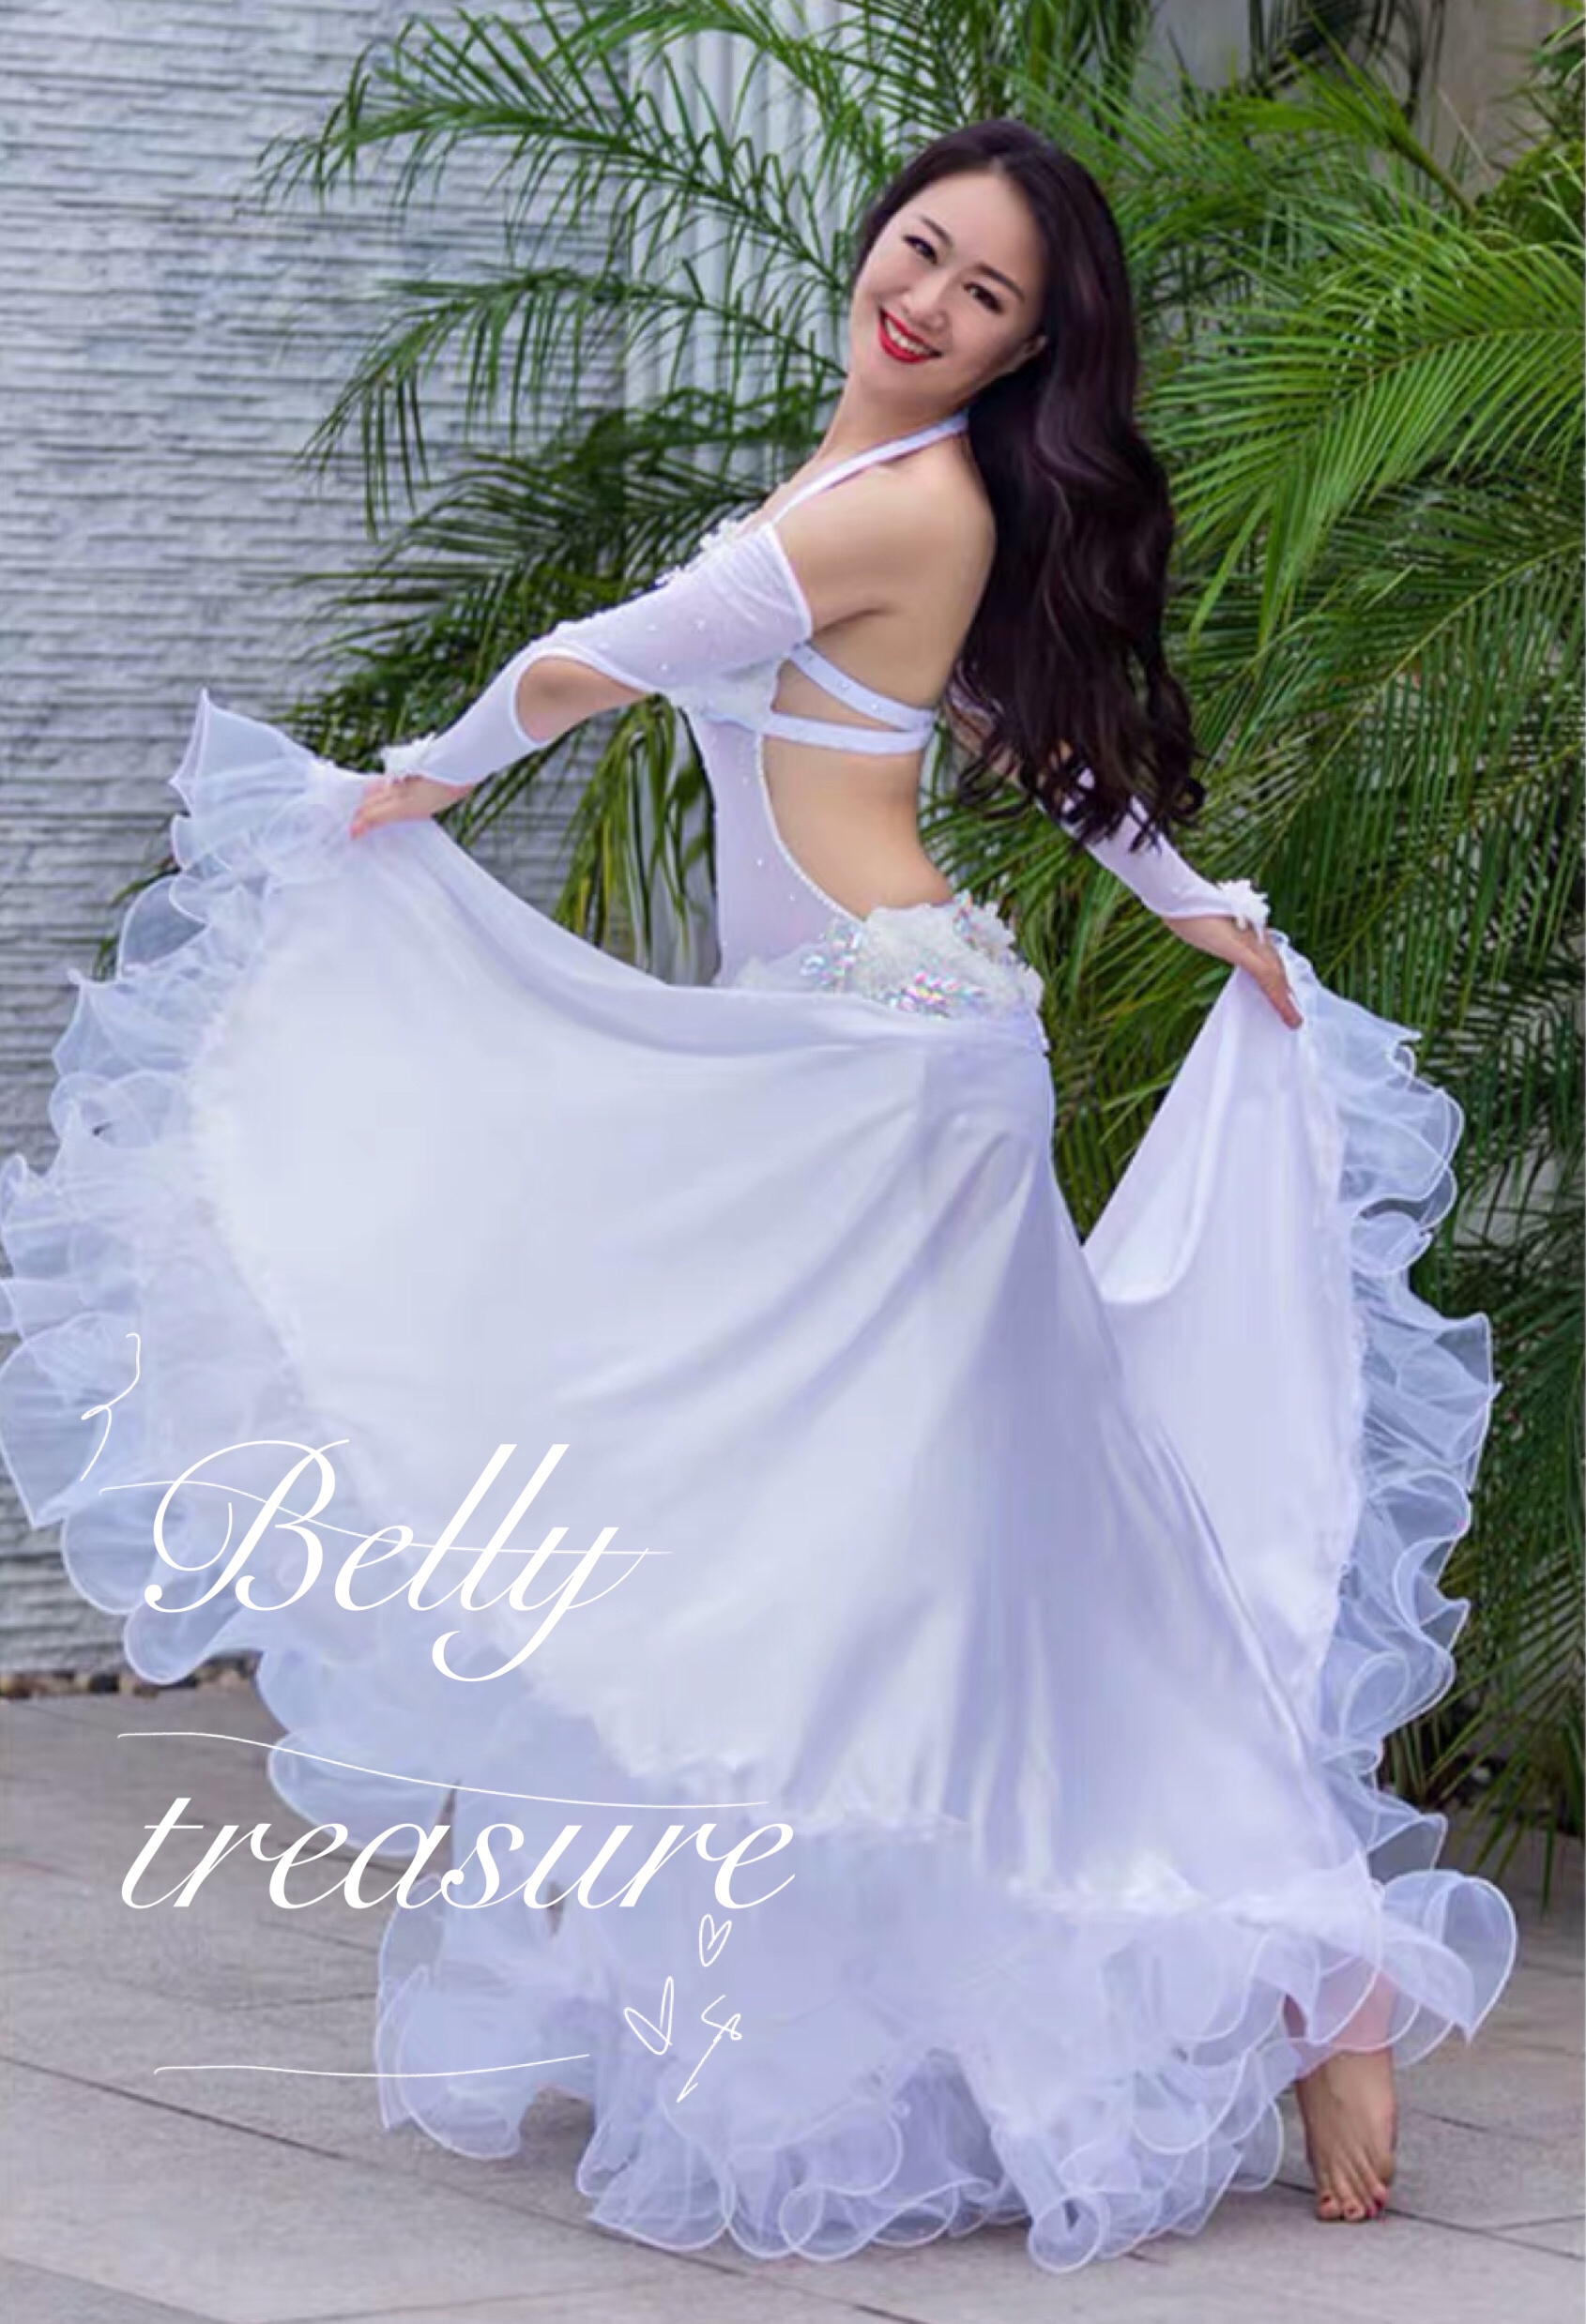 ベリーダンス舞台衣装 WZY3069 ホワイト | Belly Treasure